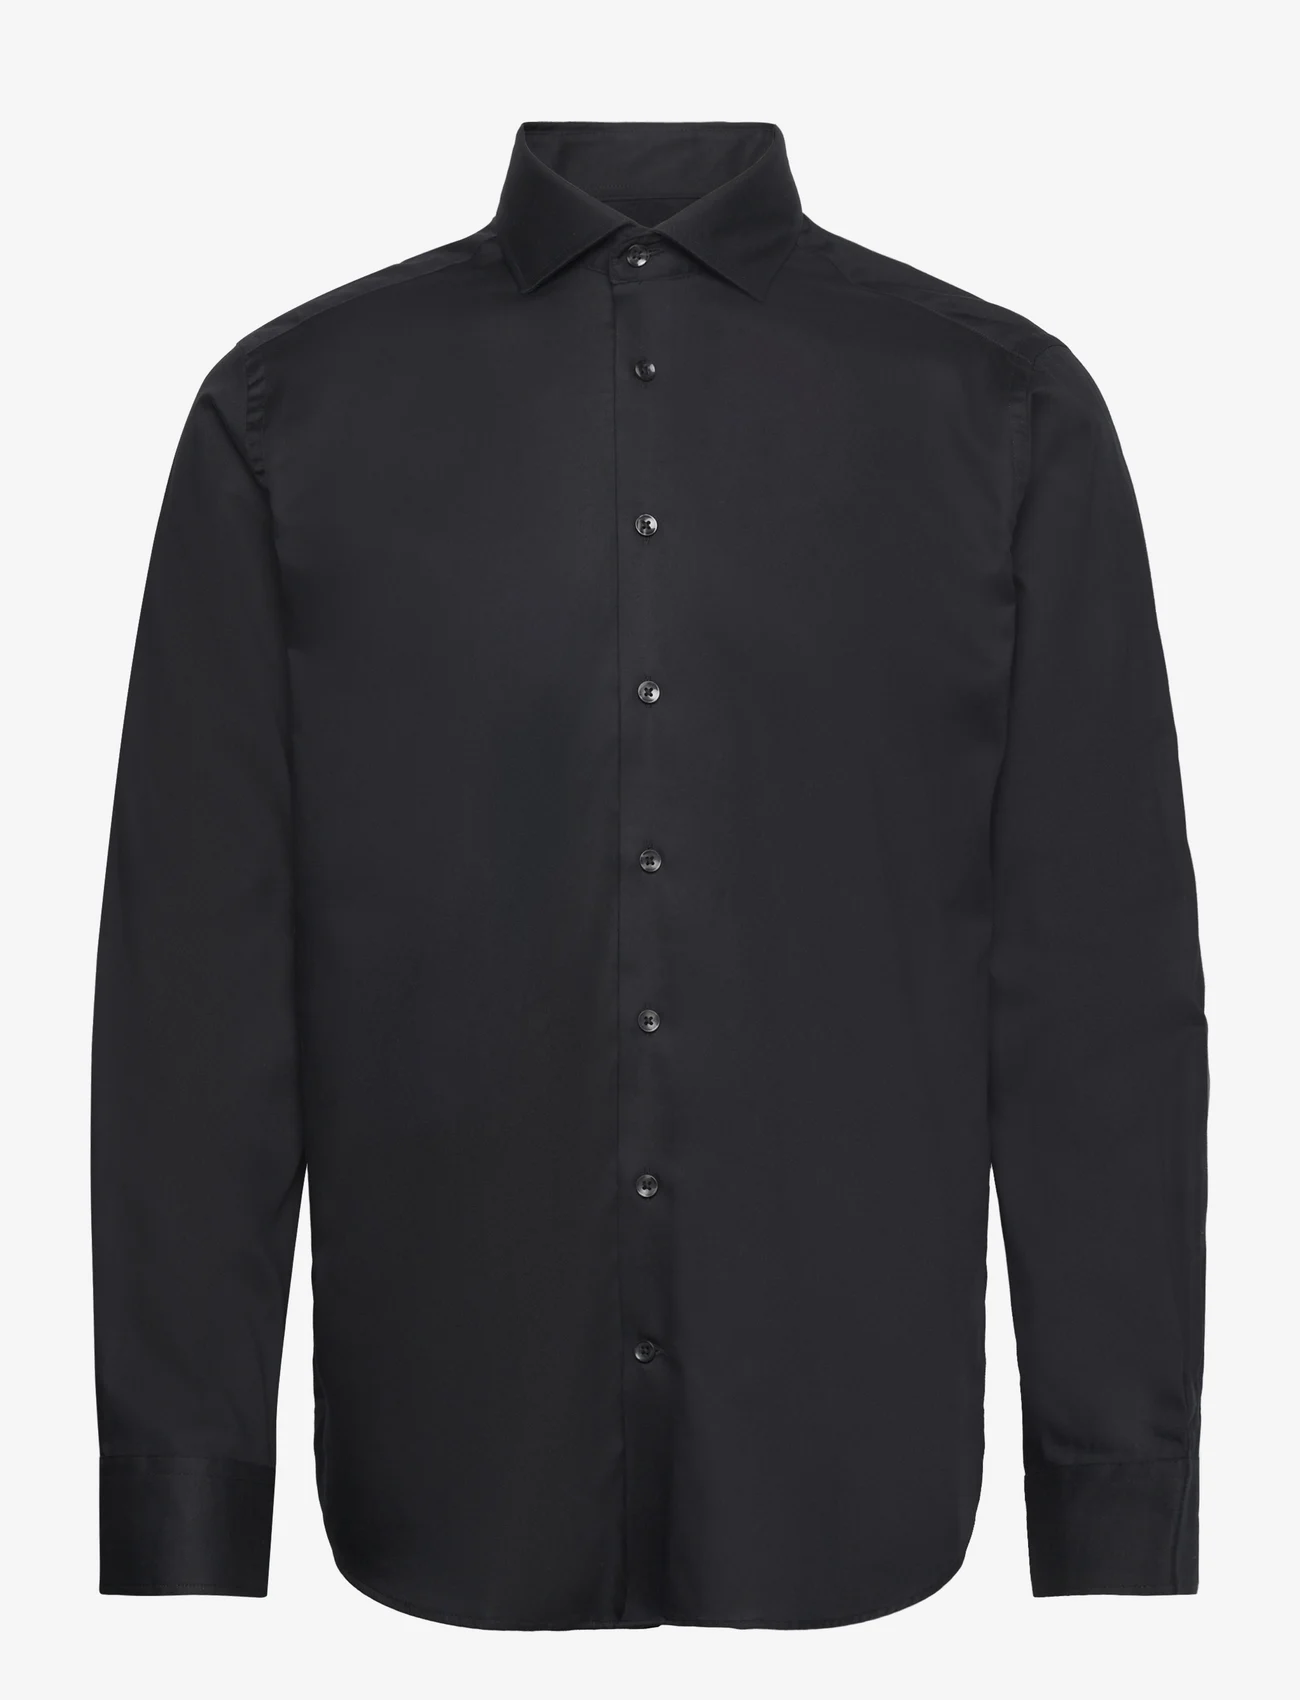 Bruun & Stengade - BS Begovic Modern Fit Shirt - laisvalaikio marškiniai - black - 0